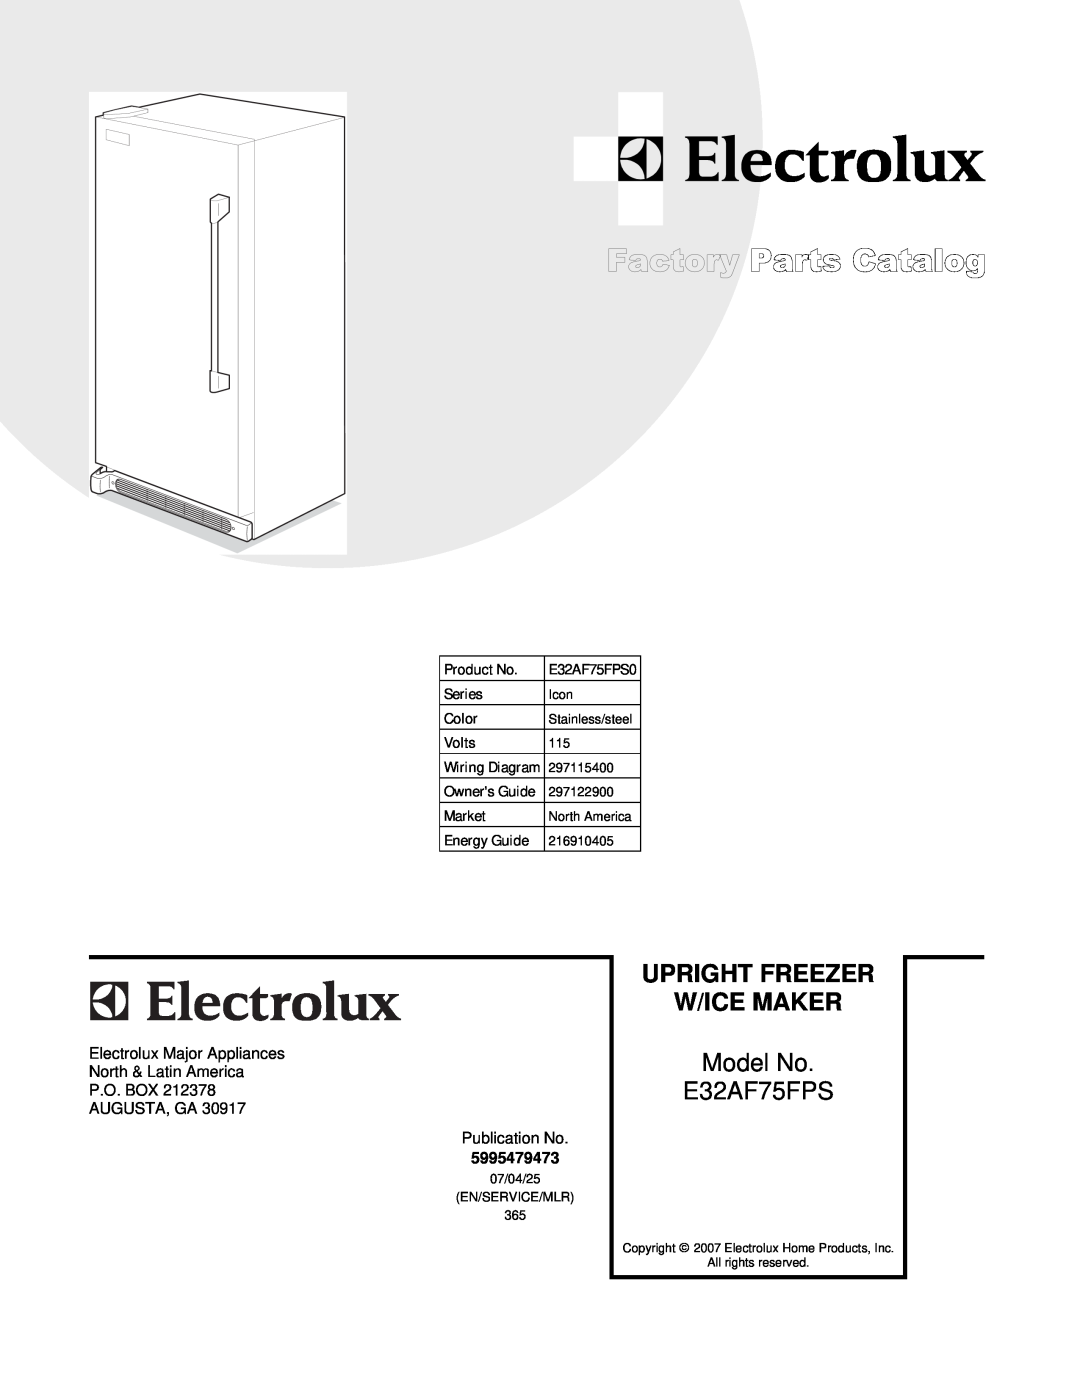 Electrolux E32AF75FPS0 manual Upright Freezer W/Ice Maker, Model No E32AF75FPS 